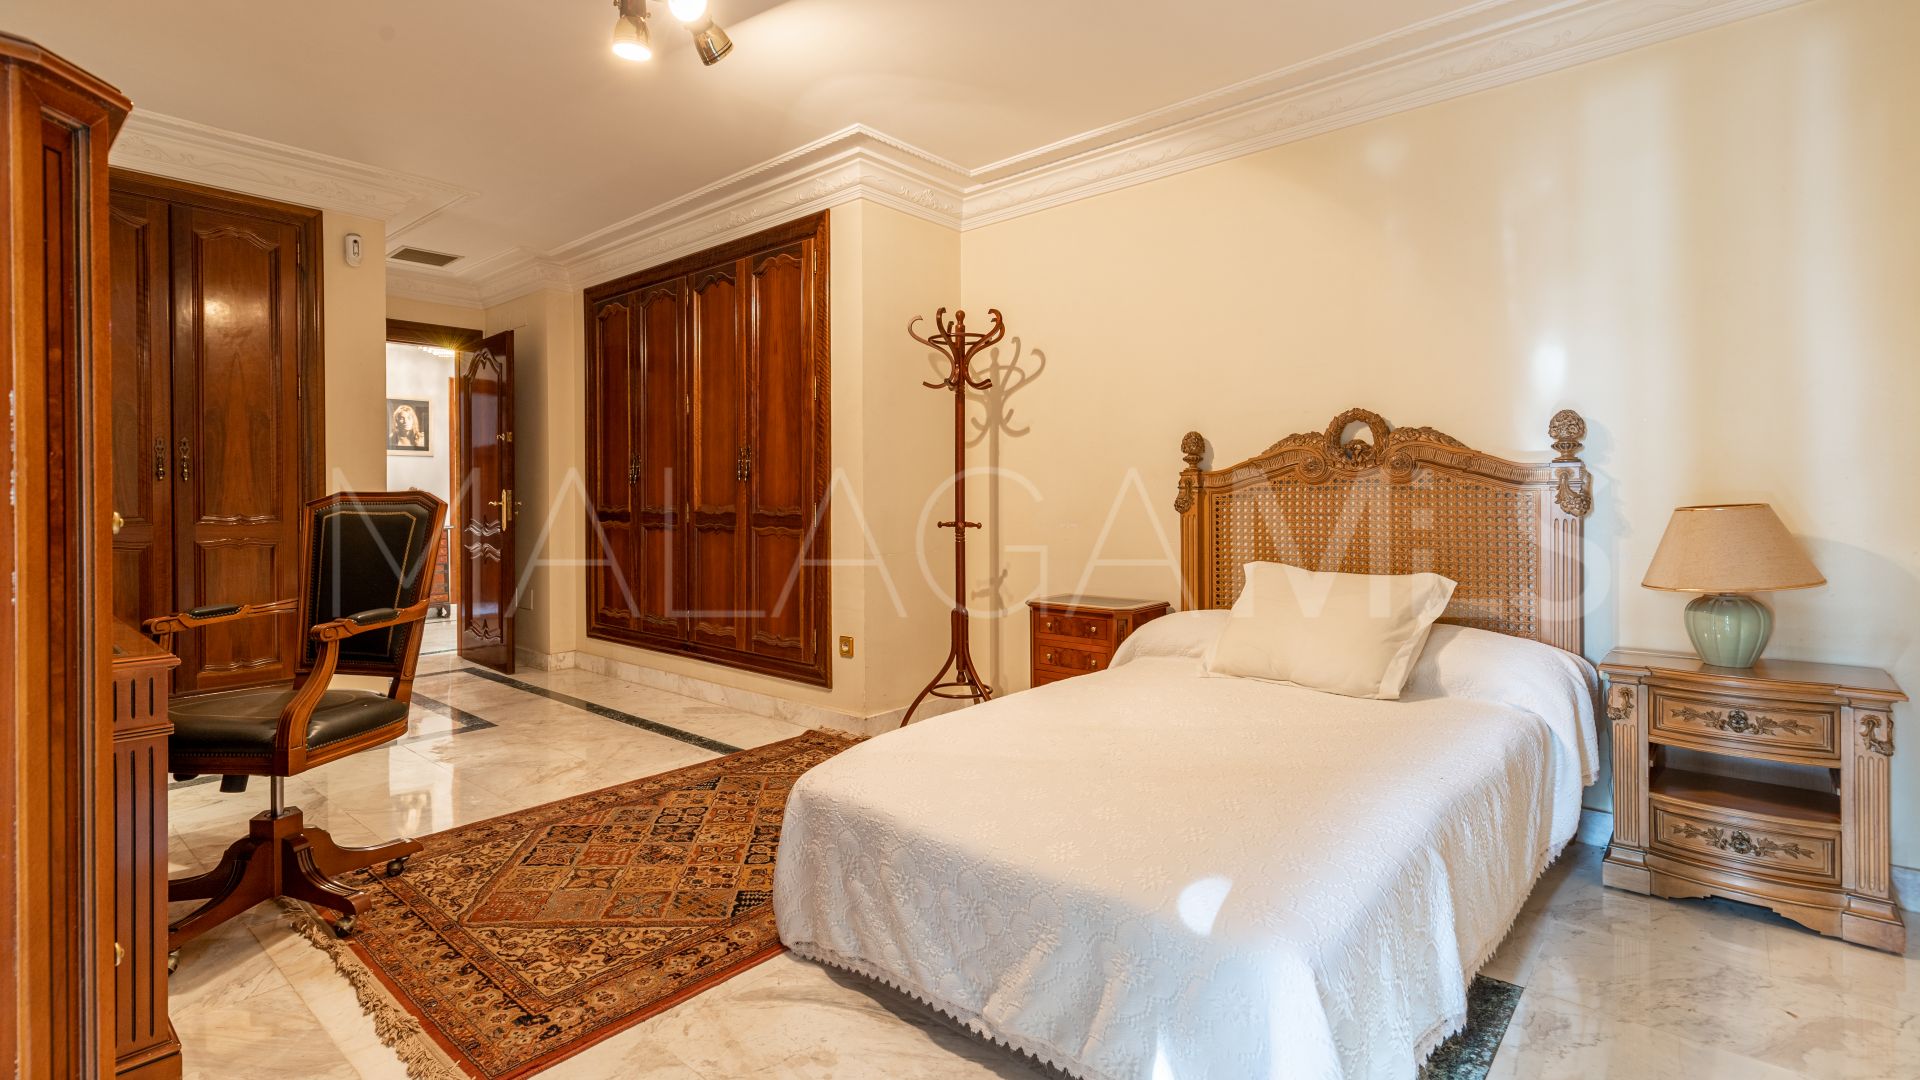 5 bedrooms El Candado villa for sale